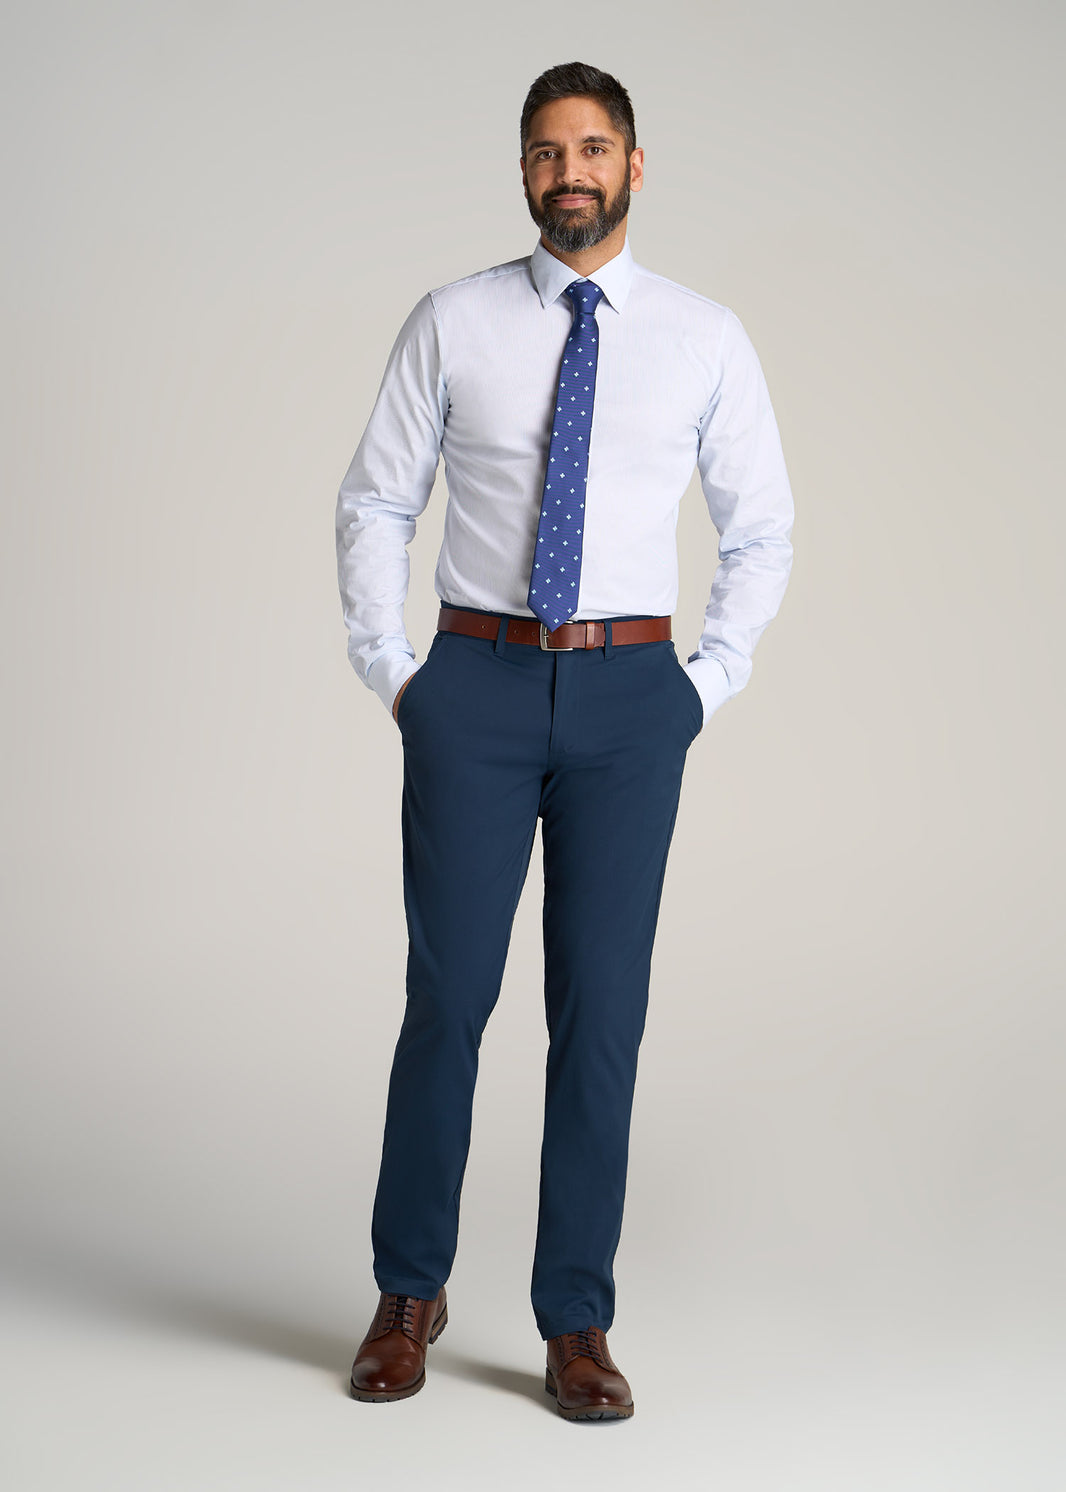 Men's Tall Dress Shirts & Button Down Shirts | American Tall